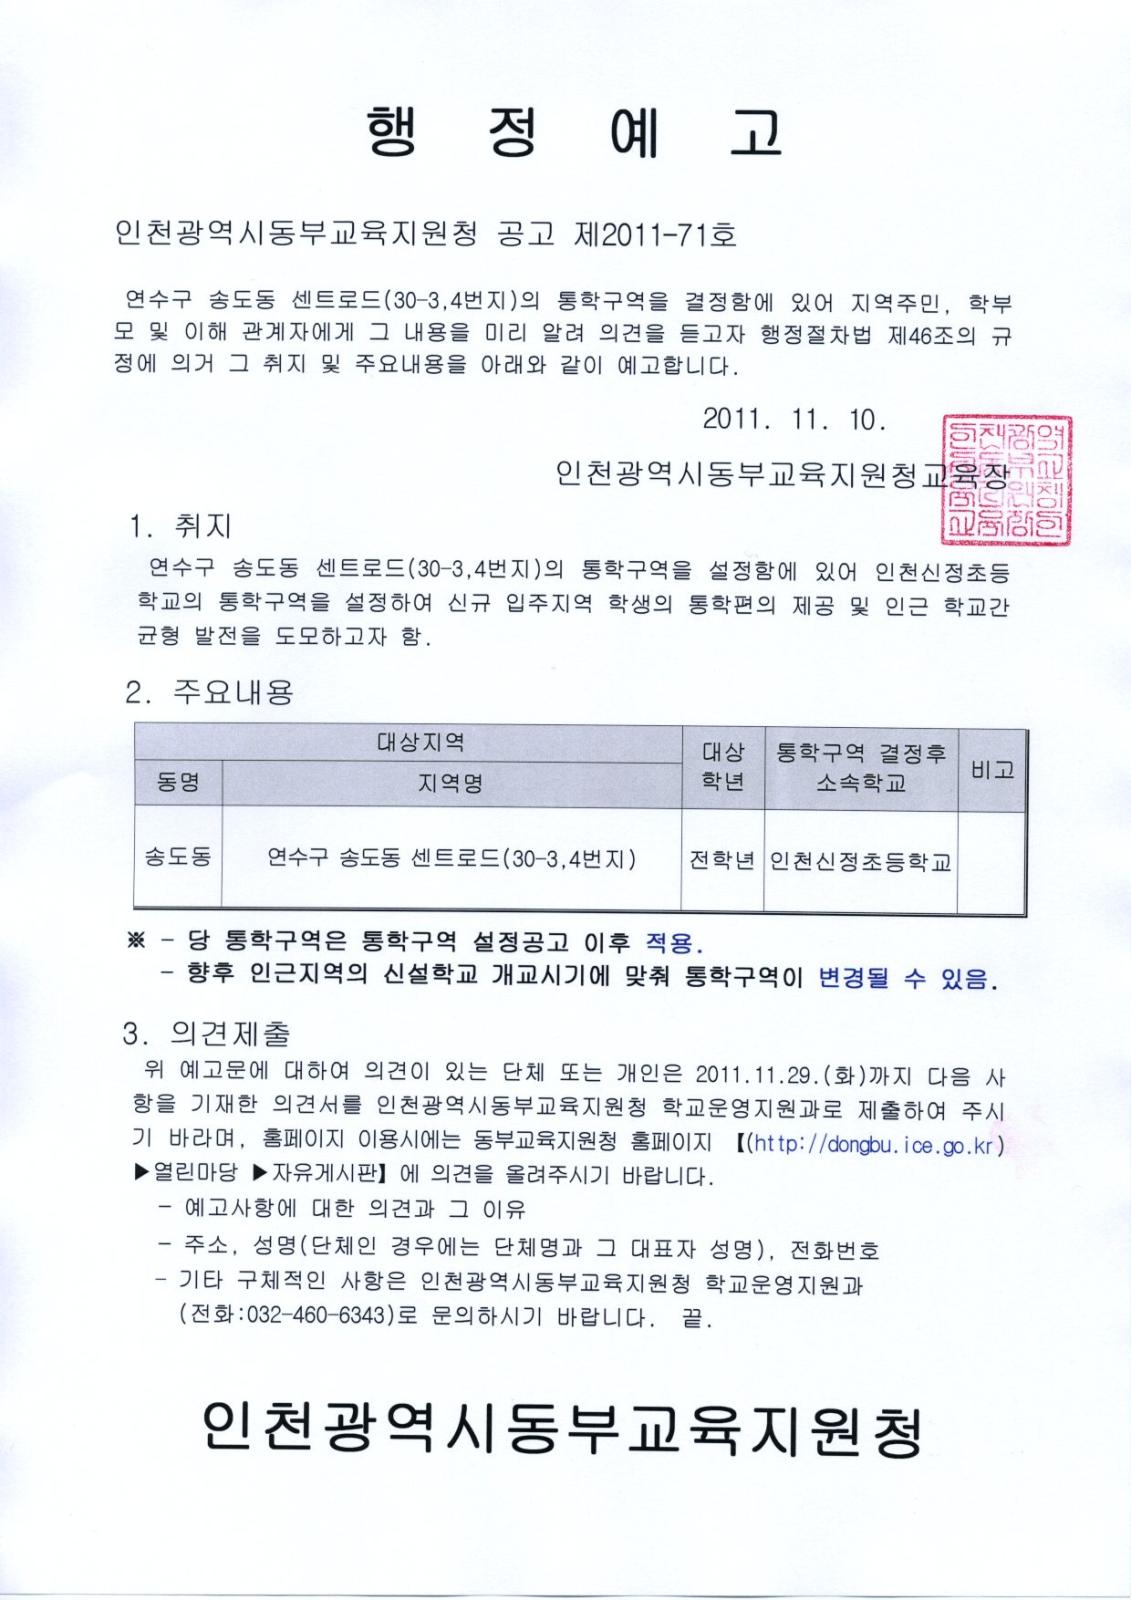 인천광역시 동부교육지원청 2011년 통학구역 설정에 따른 행정예고의 1번째 이미지